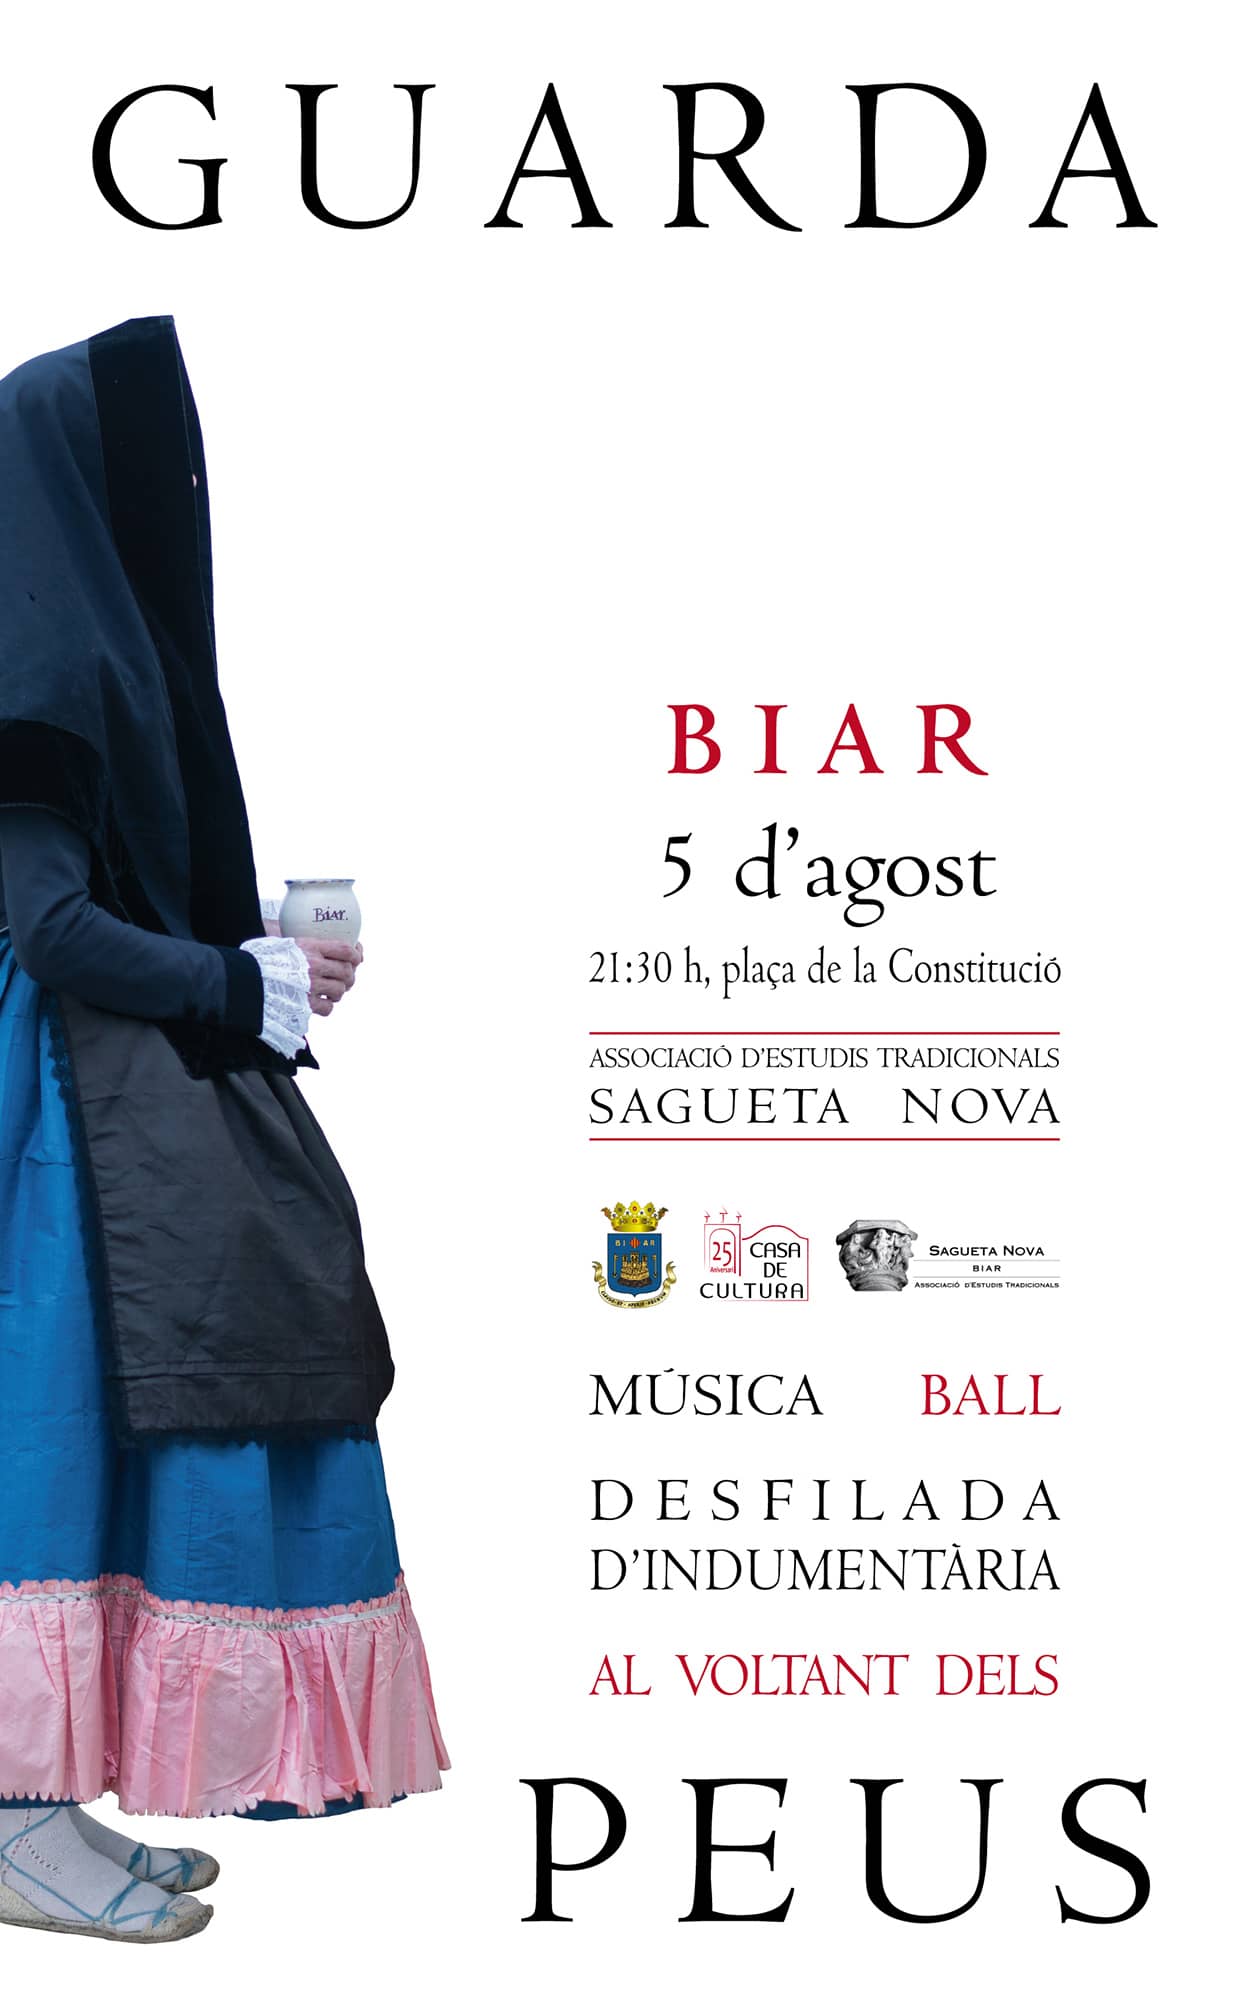 Sagueta Nova  de Biar organitza  unes activitats per a la divulgació de la indumentària tradicional valenciana